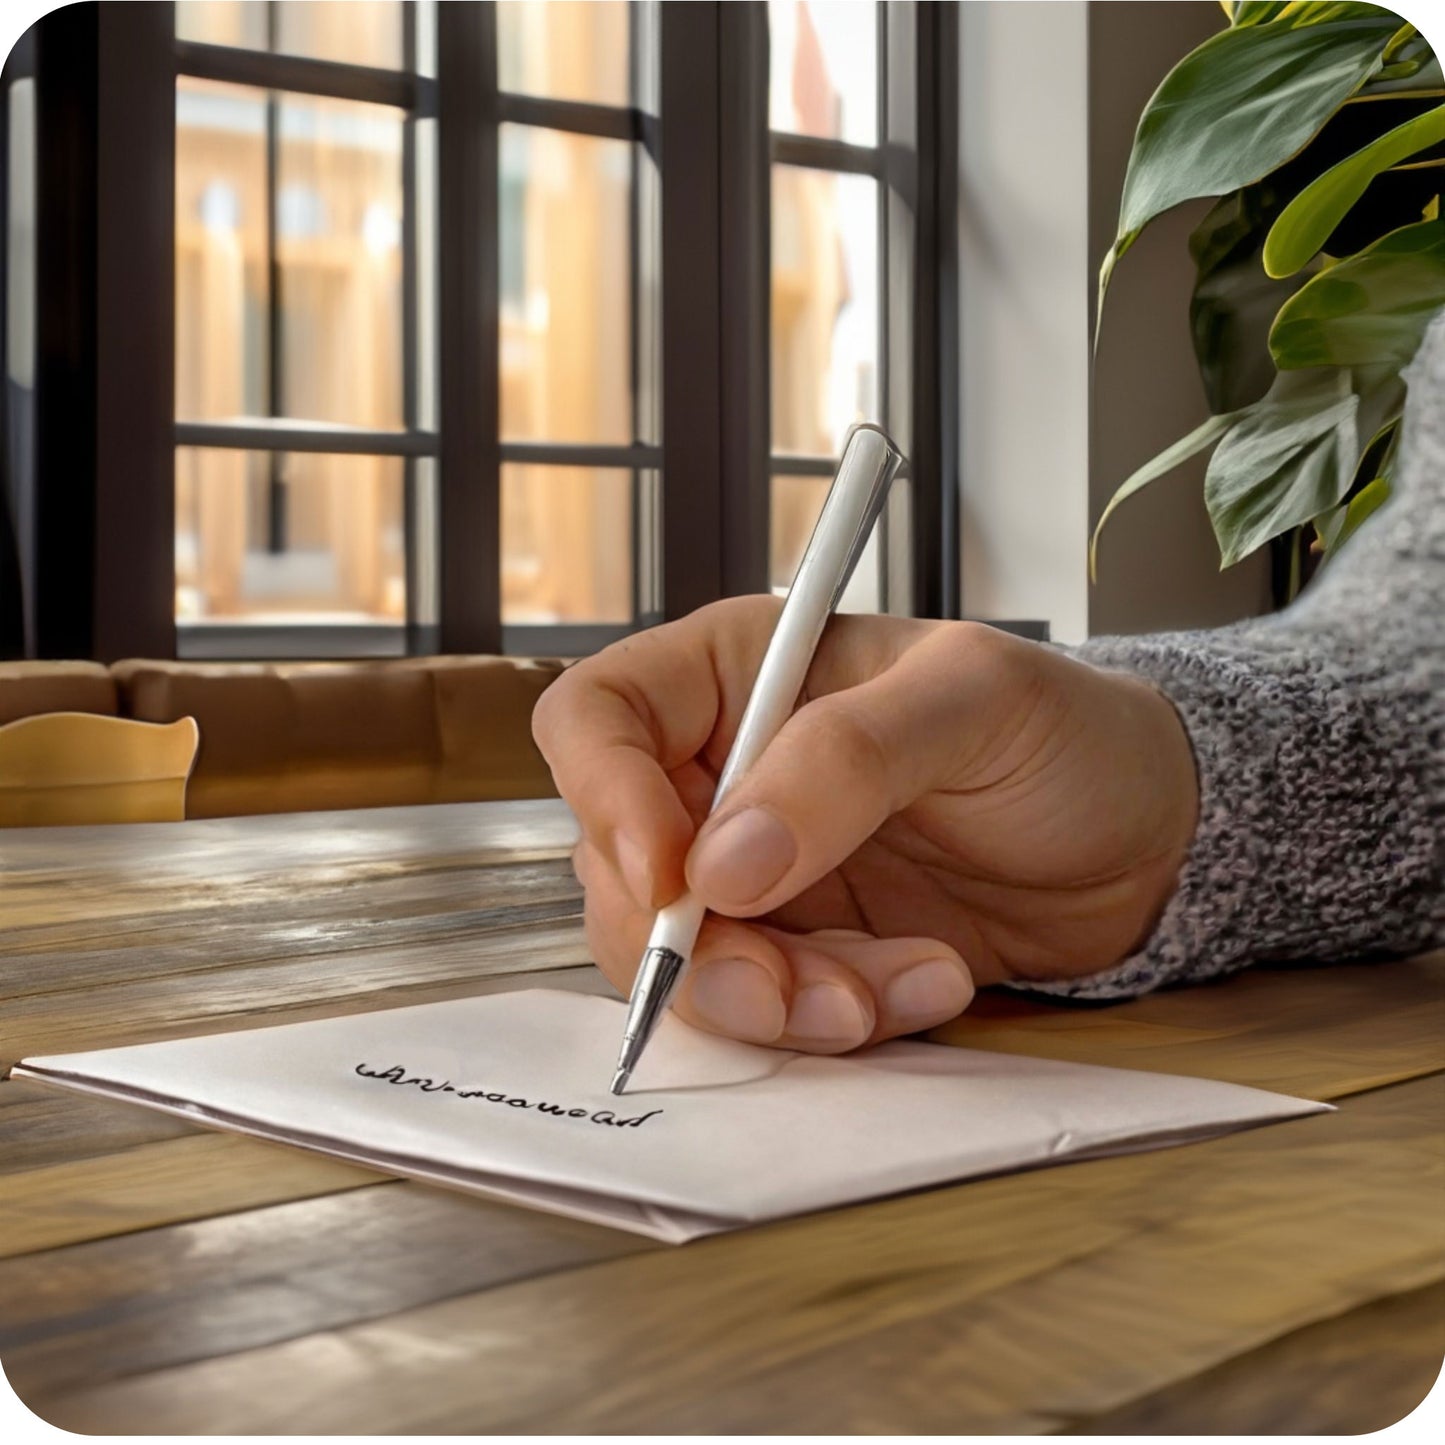 Een sfeerfoto waarin iemand een wenskaart aan het schrijven is aan een bureau, in een aangepaste, specifieke sfeervolle omgeving, het kantoor